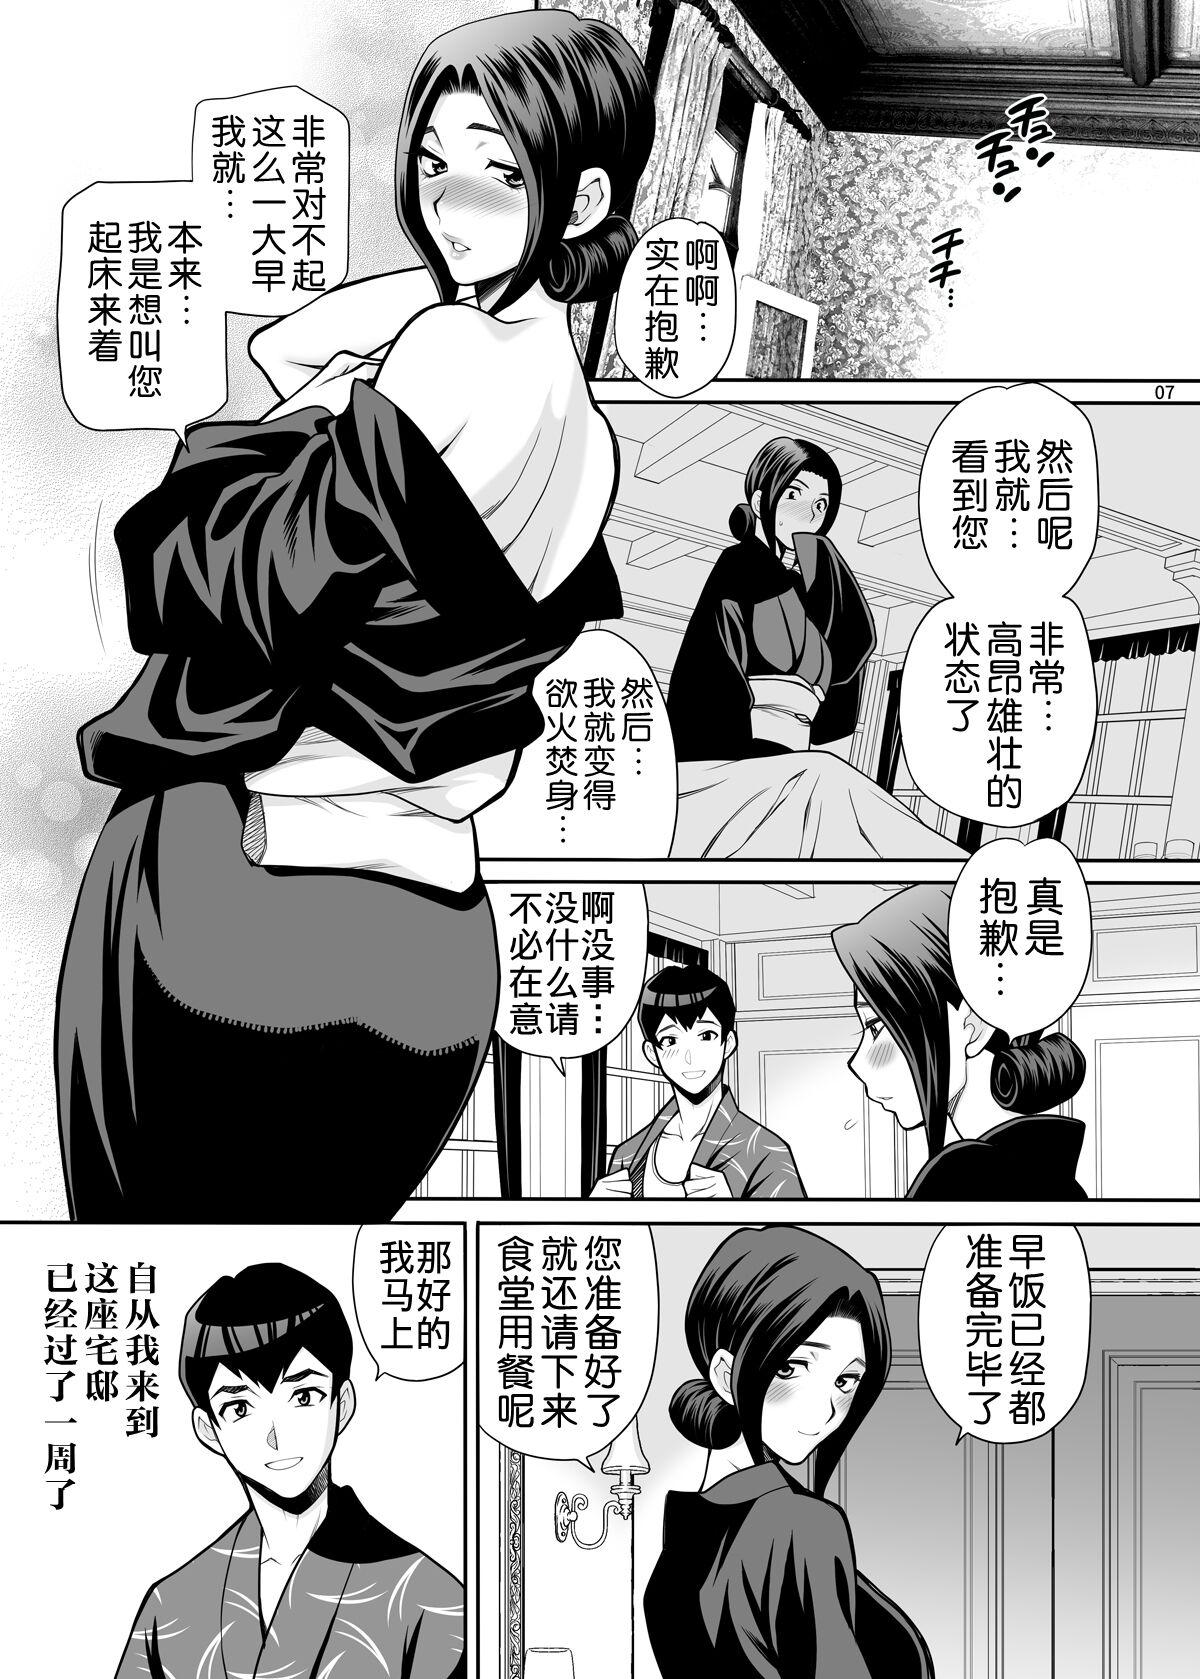 Perfect Tits Yukiyanagi no Hon 48 Miboujin Souzoku 2 Subete, Anata no Mono yo... Mms - Page 6